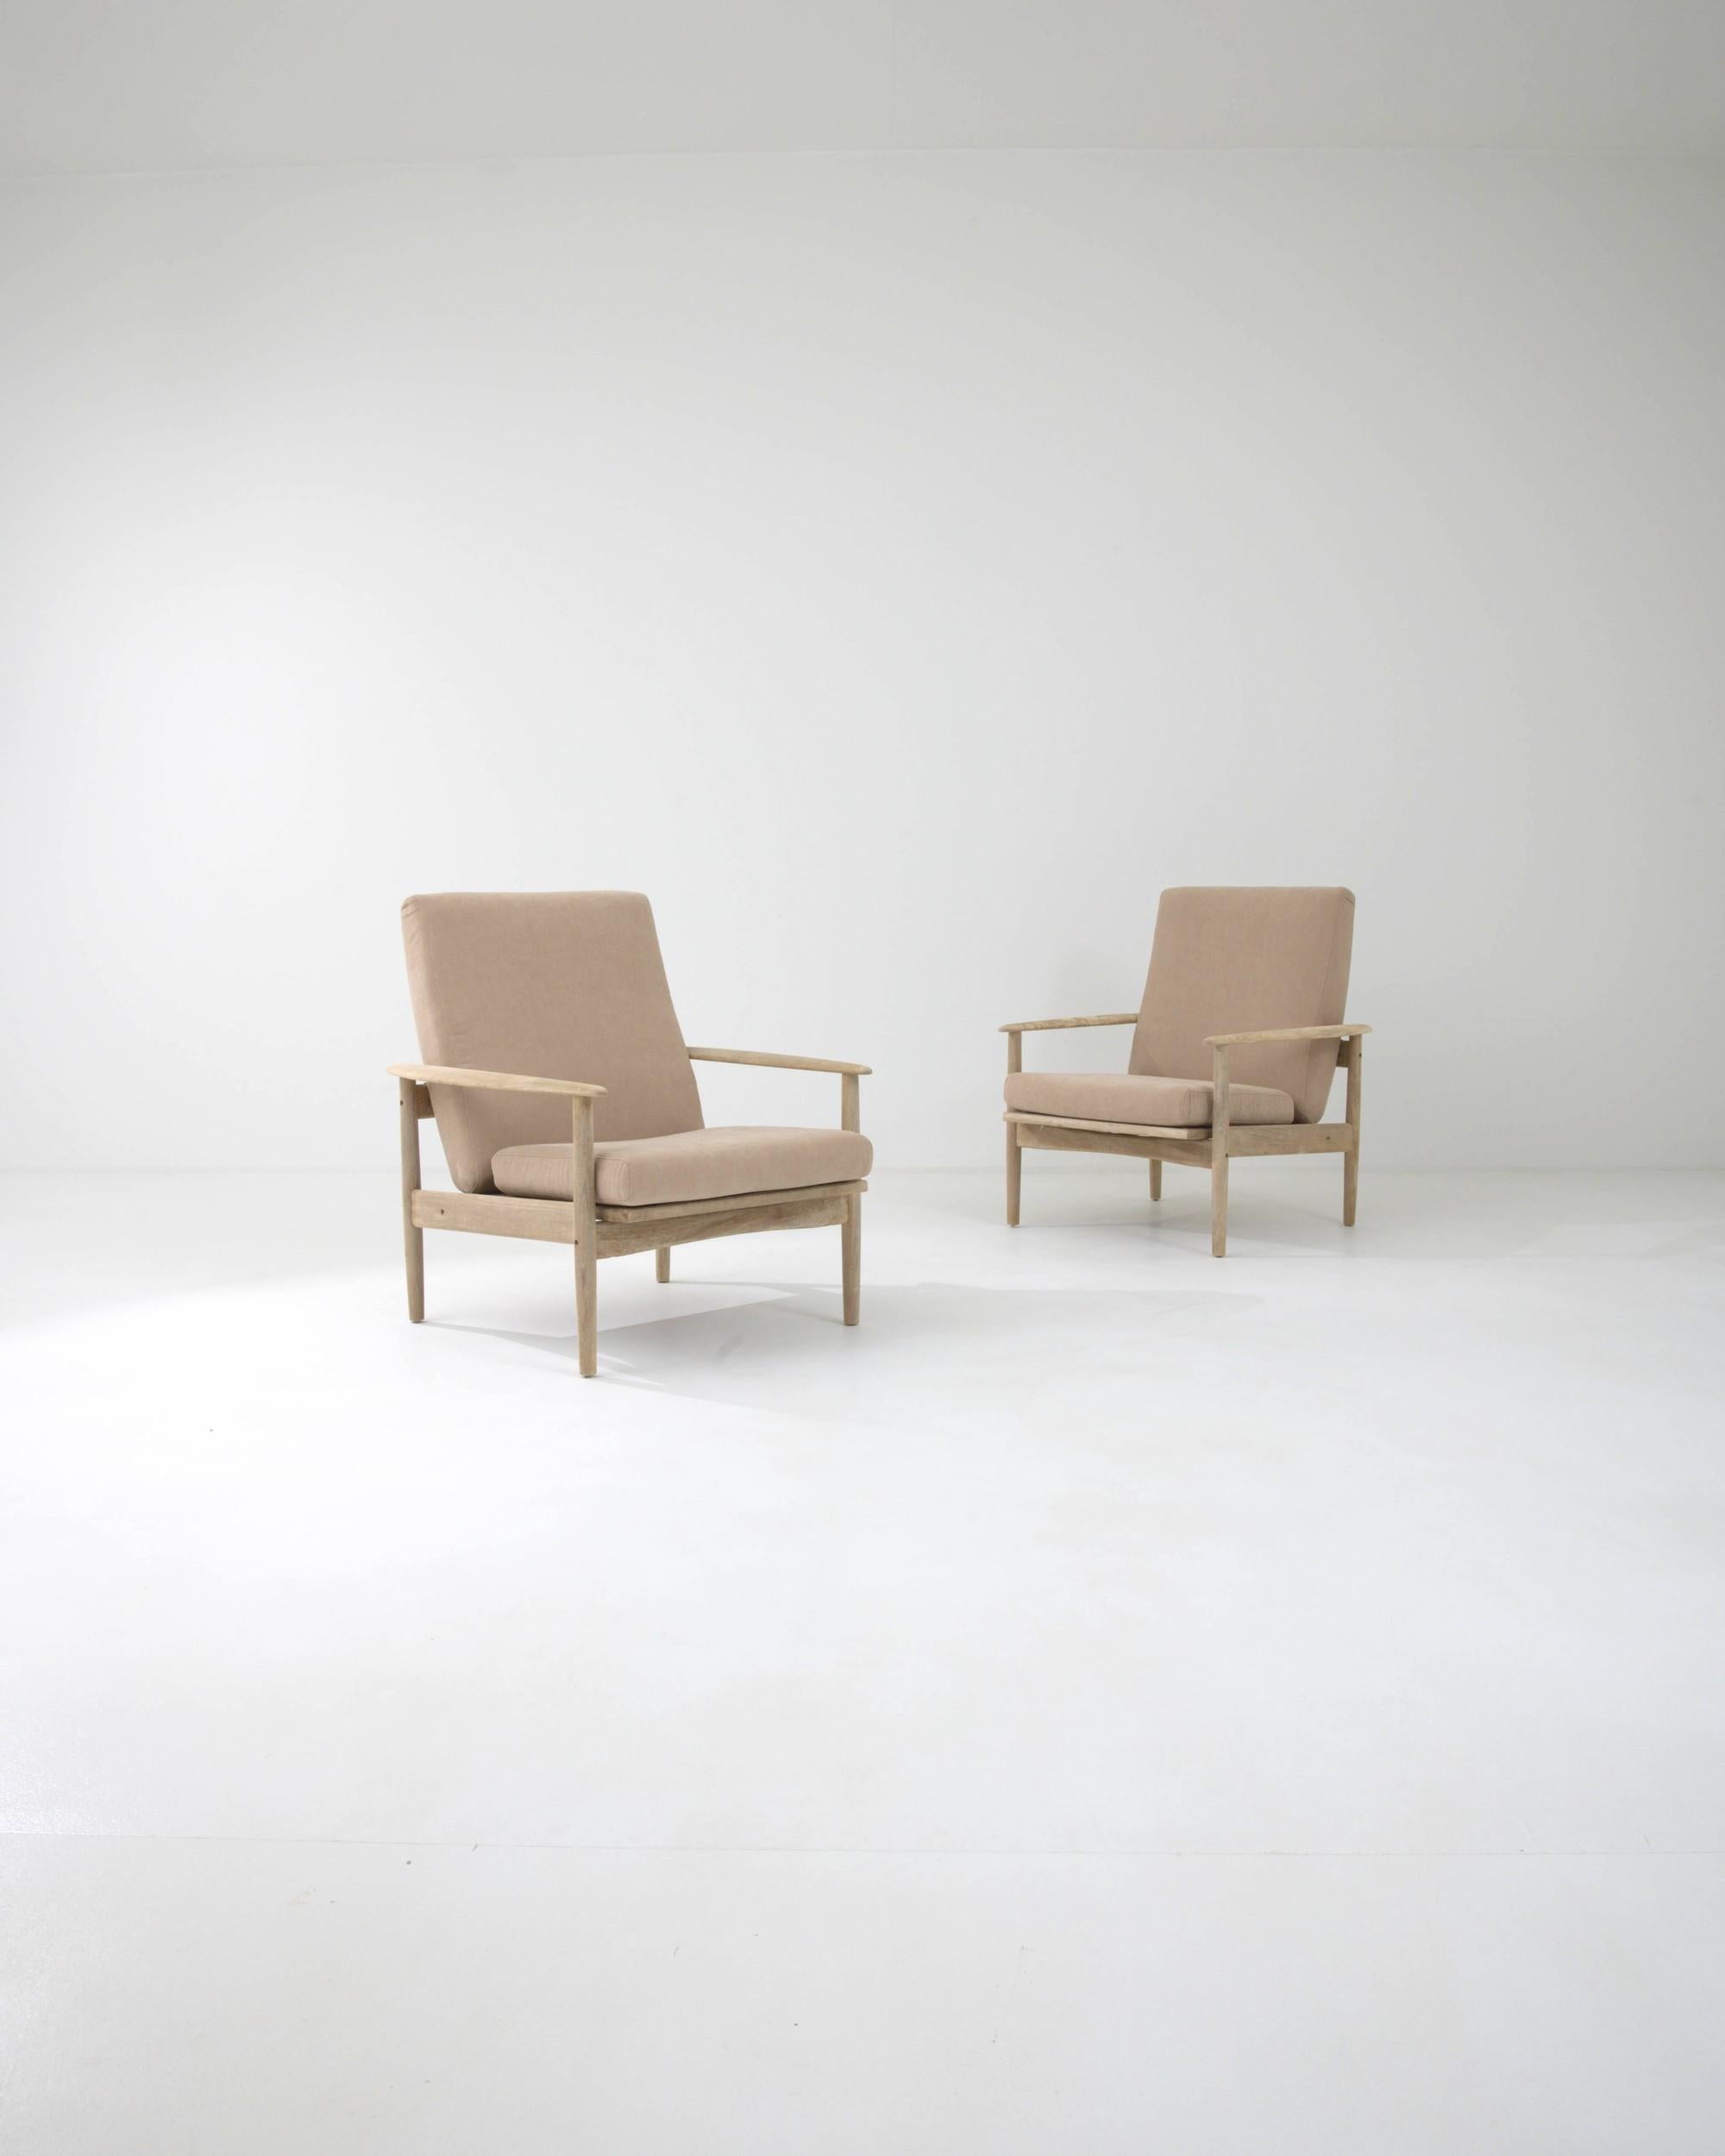 Cette jolie paire de fauteuils vintage associe une silhouette moderniste élégante à une palette de couleurs apaisantes. Fabriqué en Tchécoslovaquie dans les années 1970, les lignes épurées de la structure en bois sont adoucies par les accoudoirs